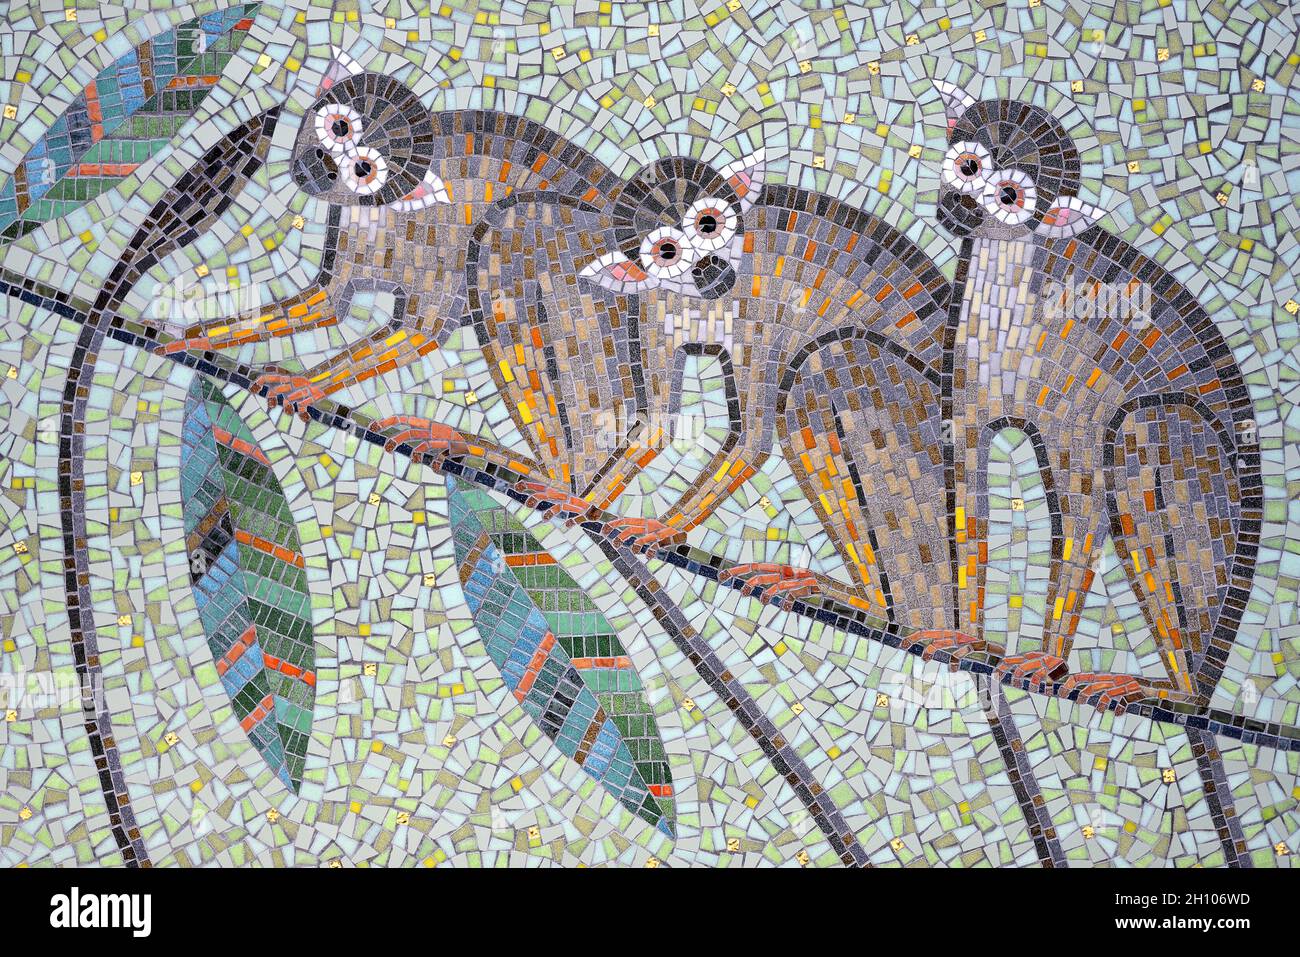 Londres, Angleterre, Royaume-Uni.Zoo de Londres, Regent's Park.Mosaïque de singes écureuil (Tessa Hunkin) à l'entrée principale. Banque D'Images